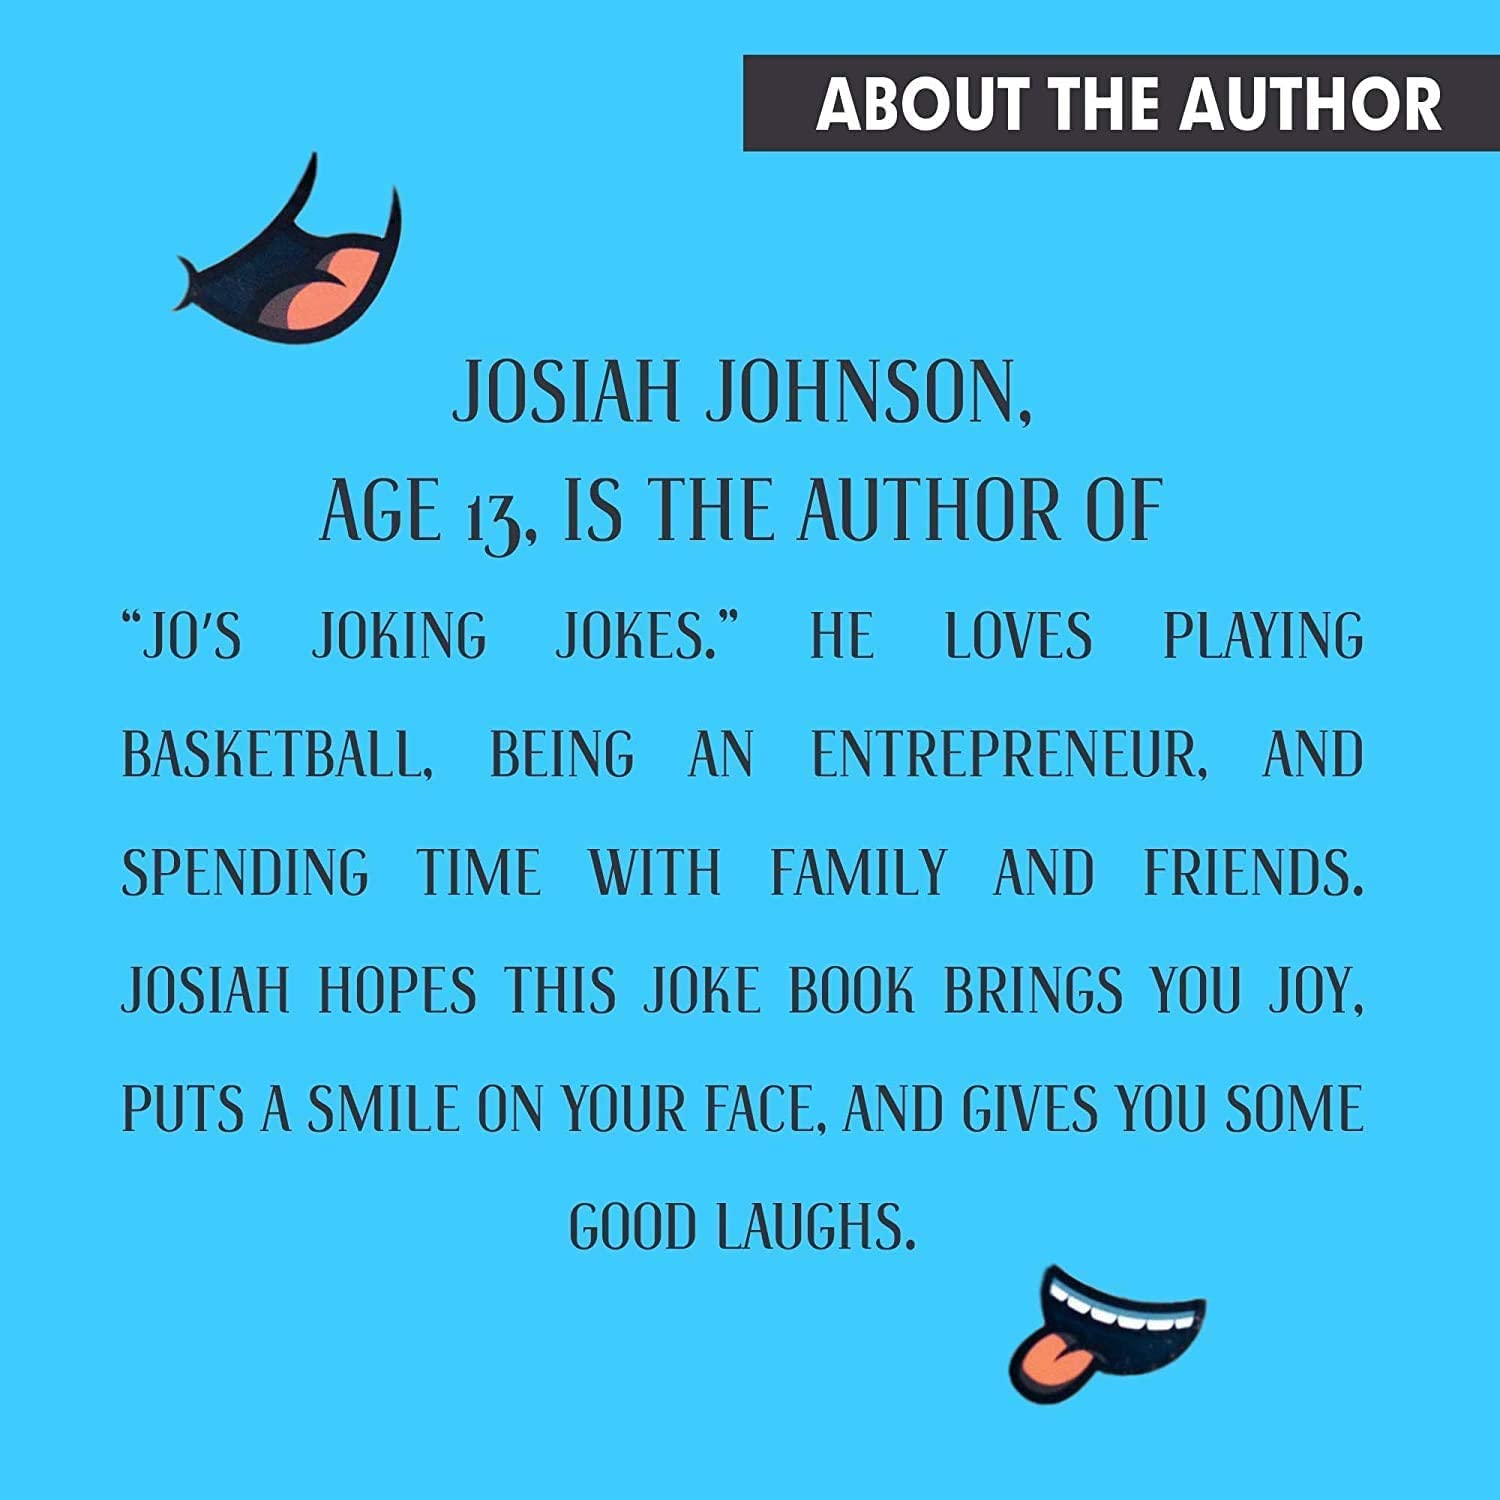 Jo's Jokin' Jokes Book for Kids by Kids Volume 1 & 2 Set - Rapid Brands